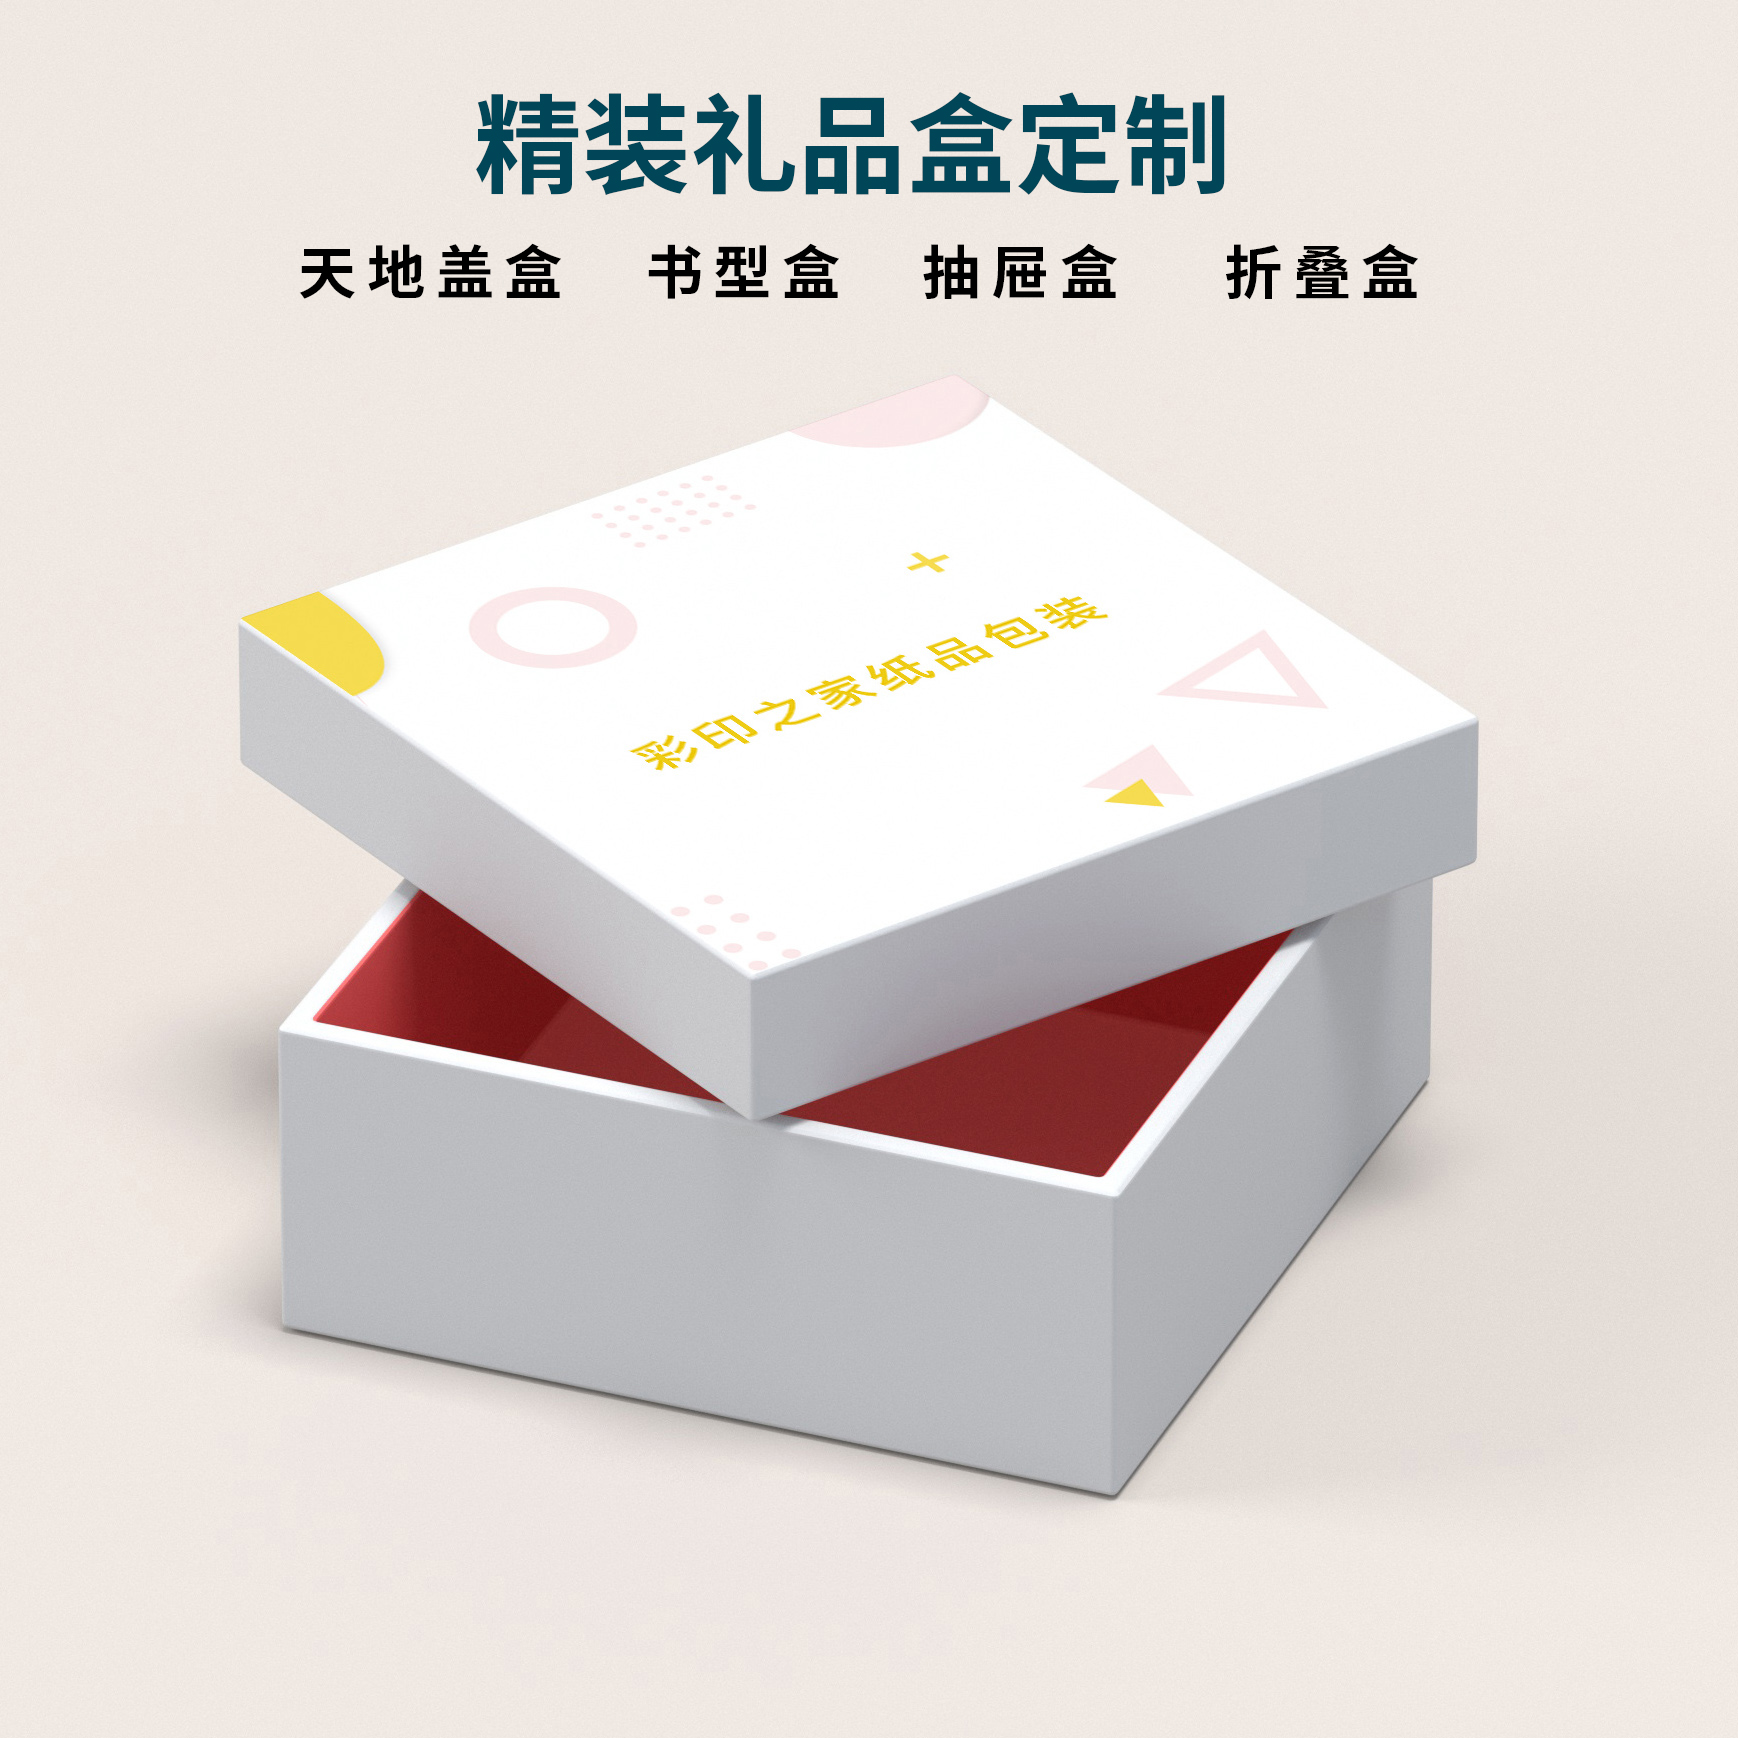 郑州包装盒设计印刷公司|郑州佛香包装盒定做沉香檀香包装盒设计礼品盒印刷厂